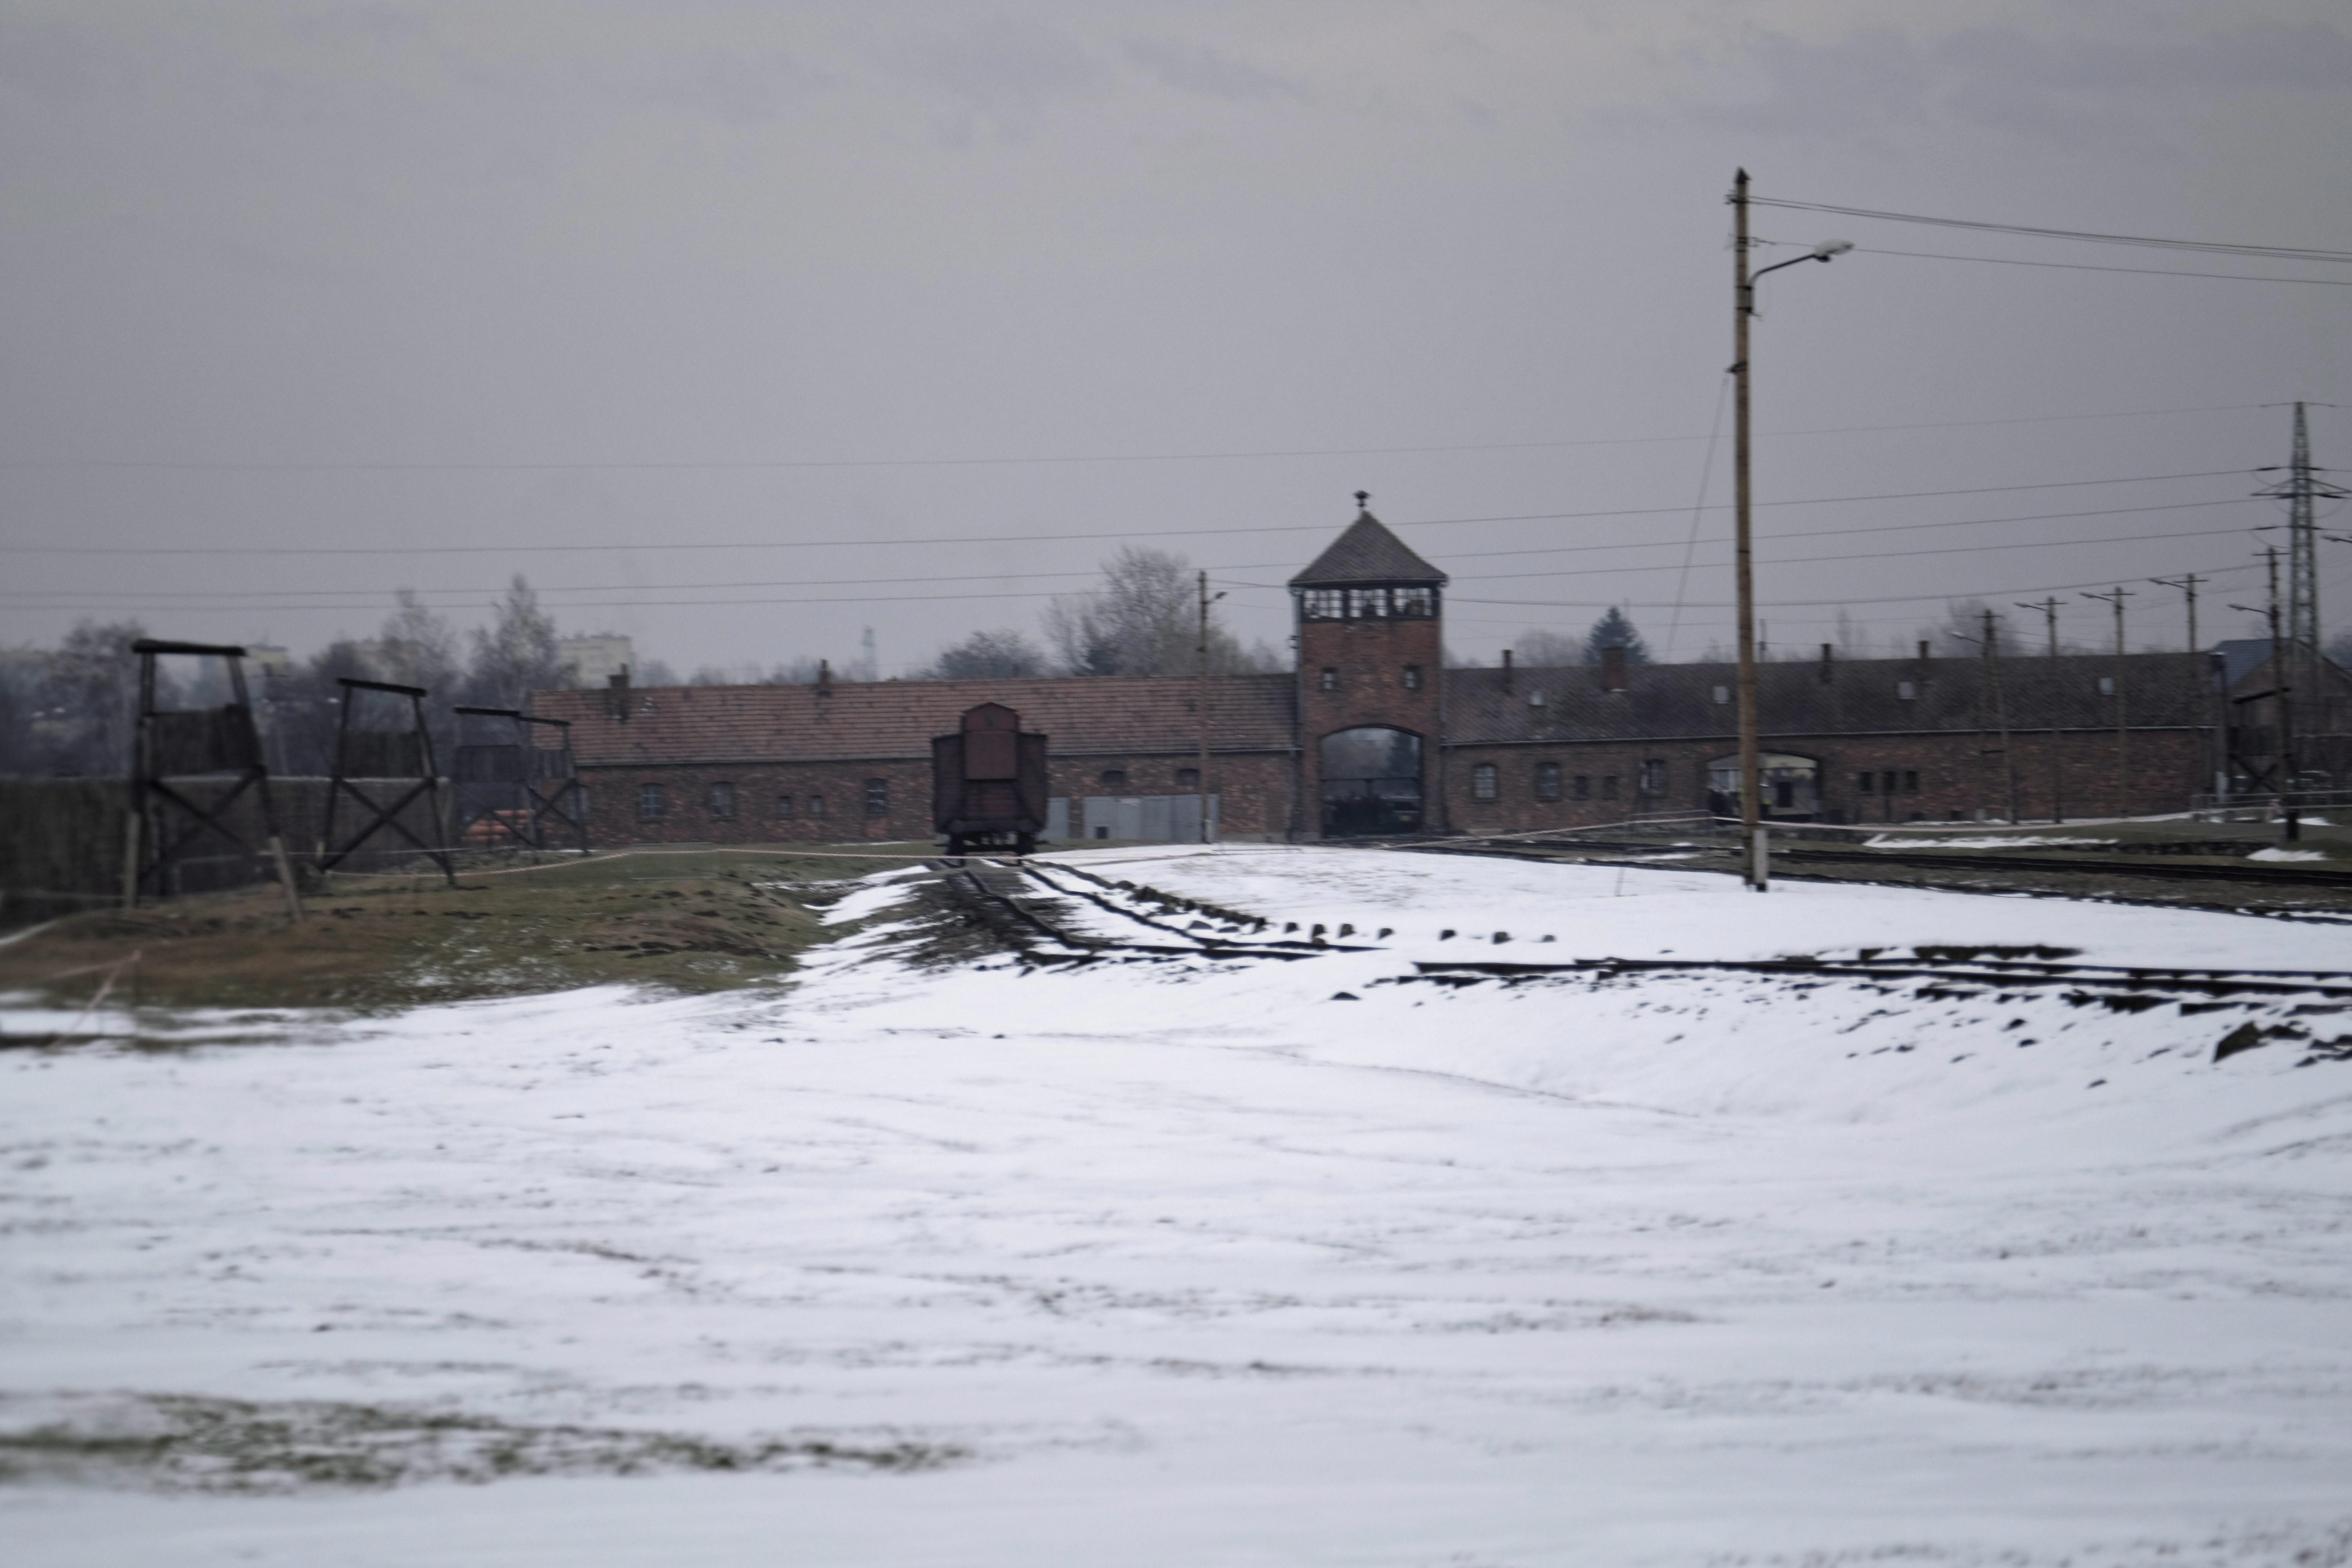  En aniversario de la liberación de Auschwitz, supervivientes conmemoran el Holocausto